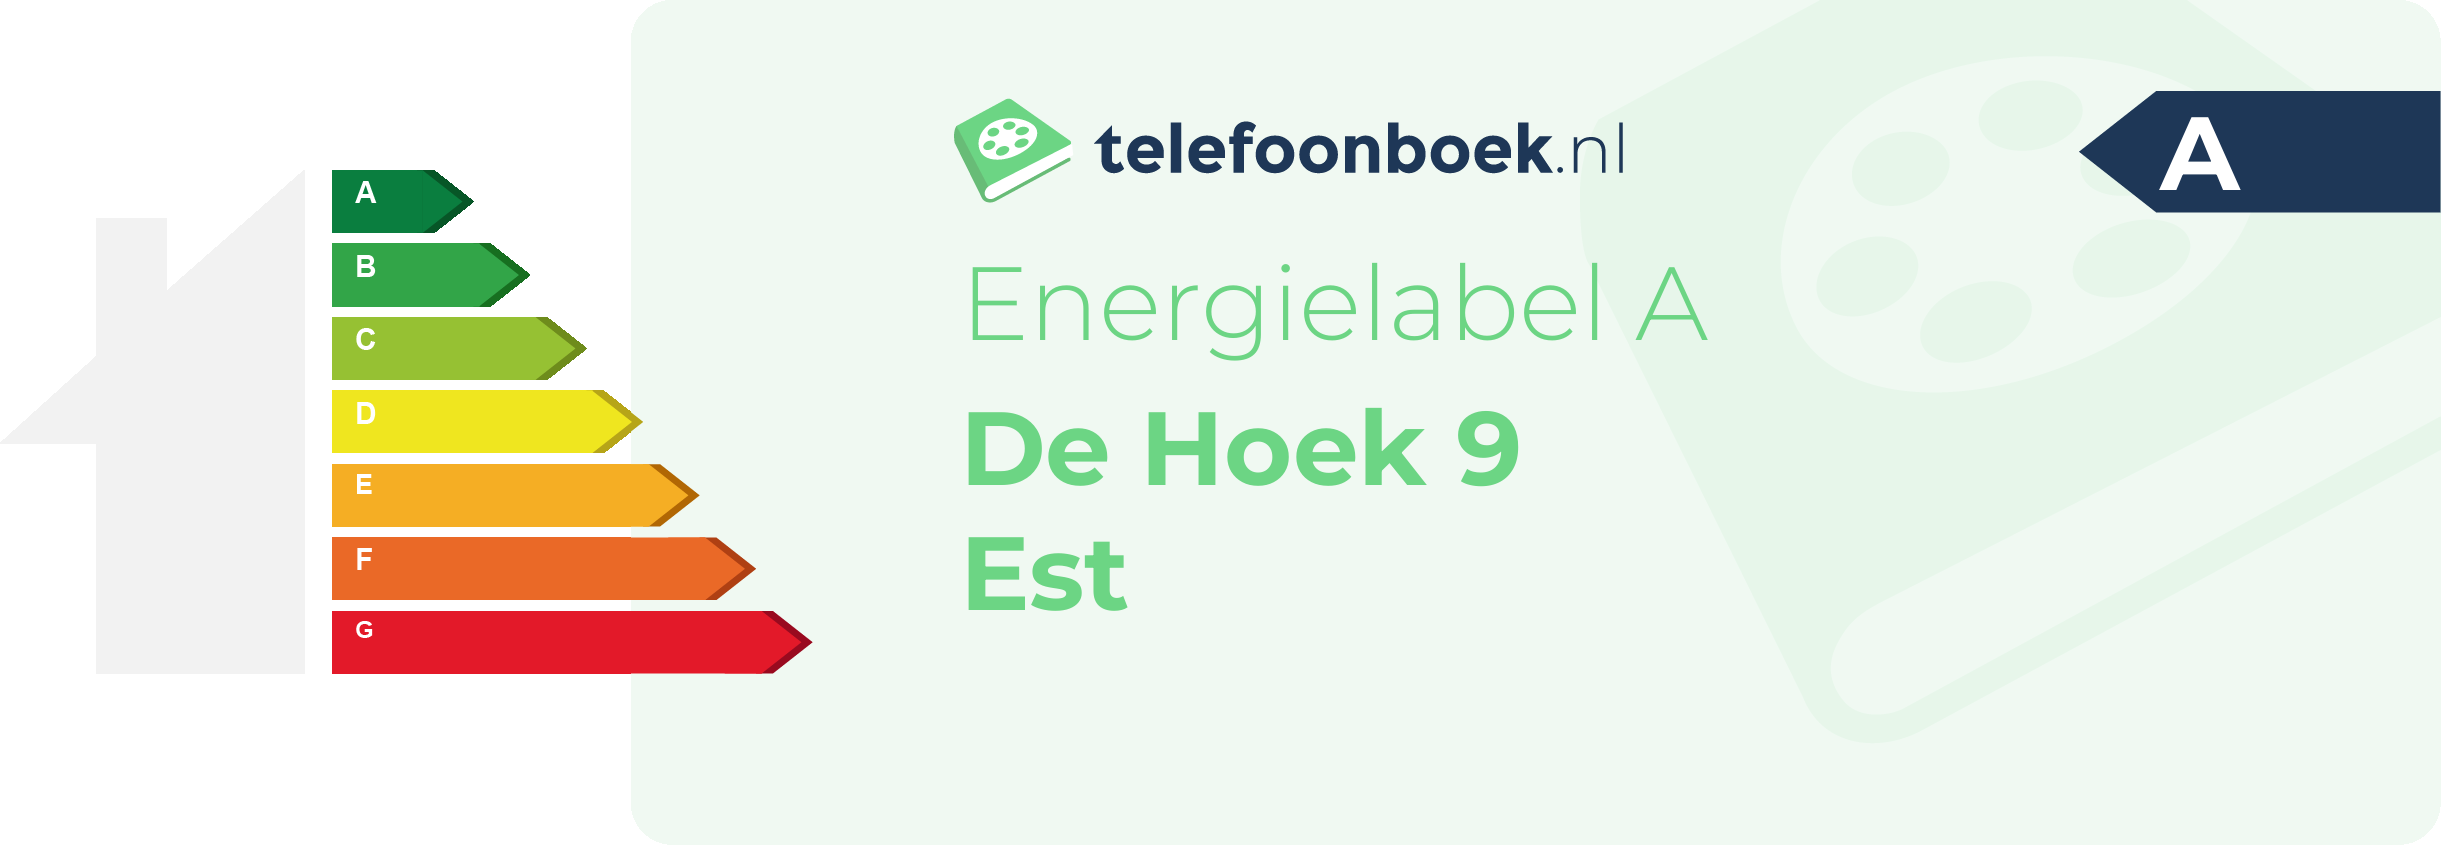 Energielabel De Hoek 9 Est